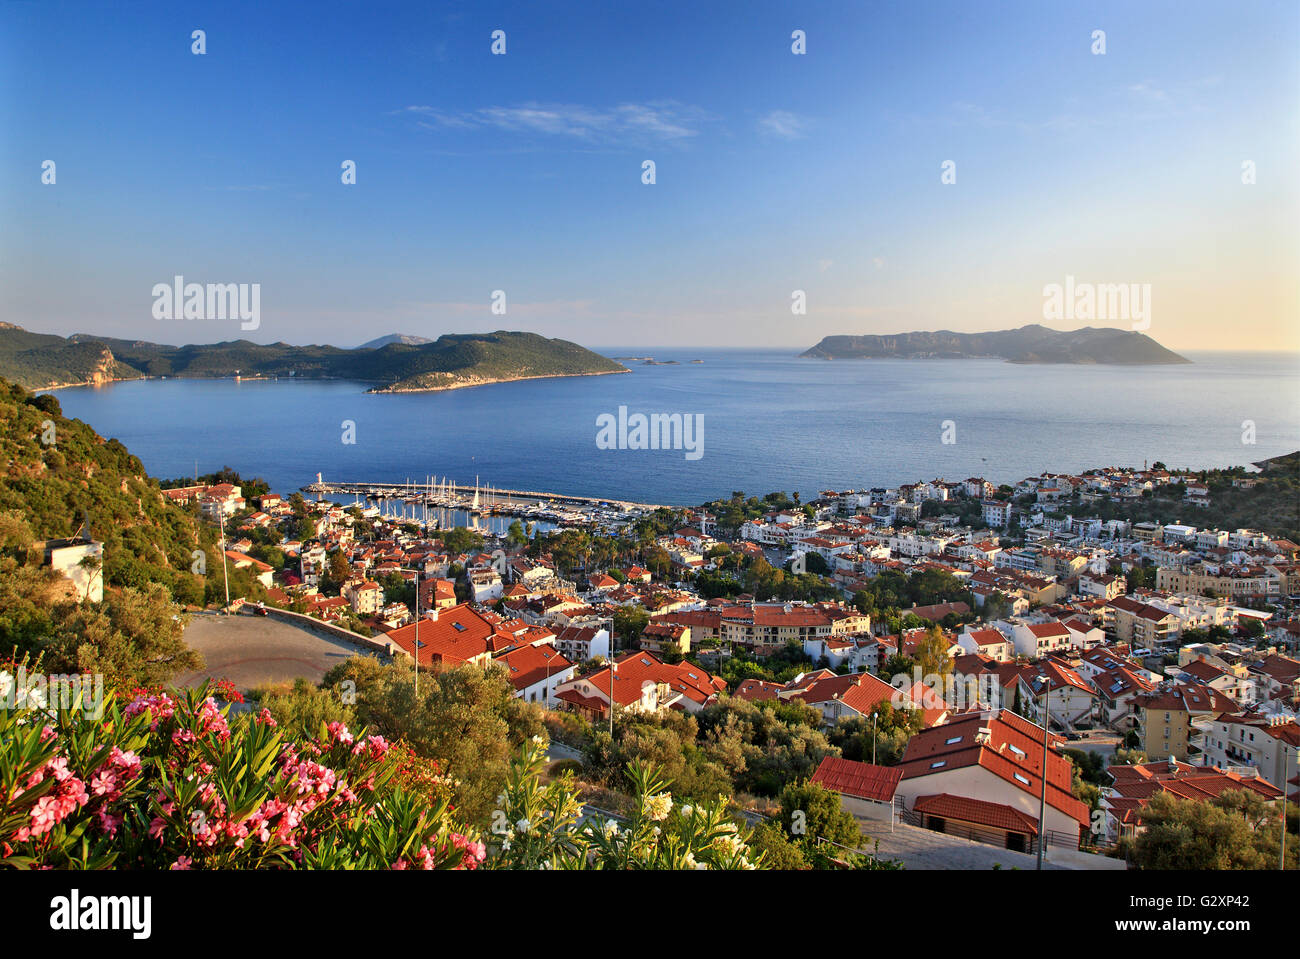 La pittoresca cittadina di Kas (antico nome "Antiphellos'), Lycia, provincia di Antalya in Turchia. In BG Kastellorizo (Greco) isola. Foto Stock